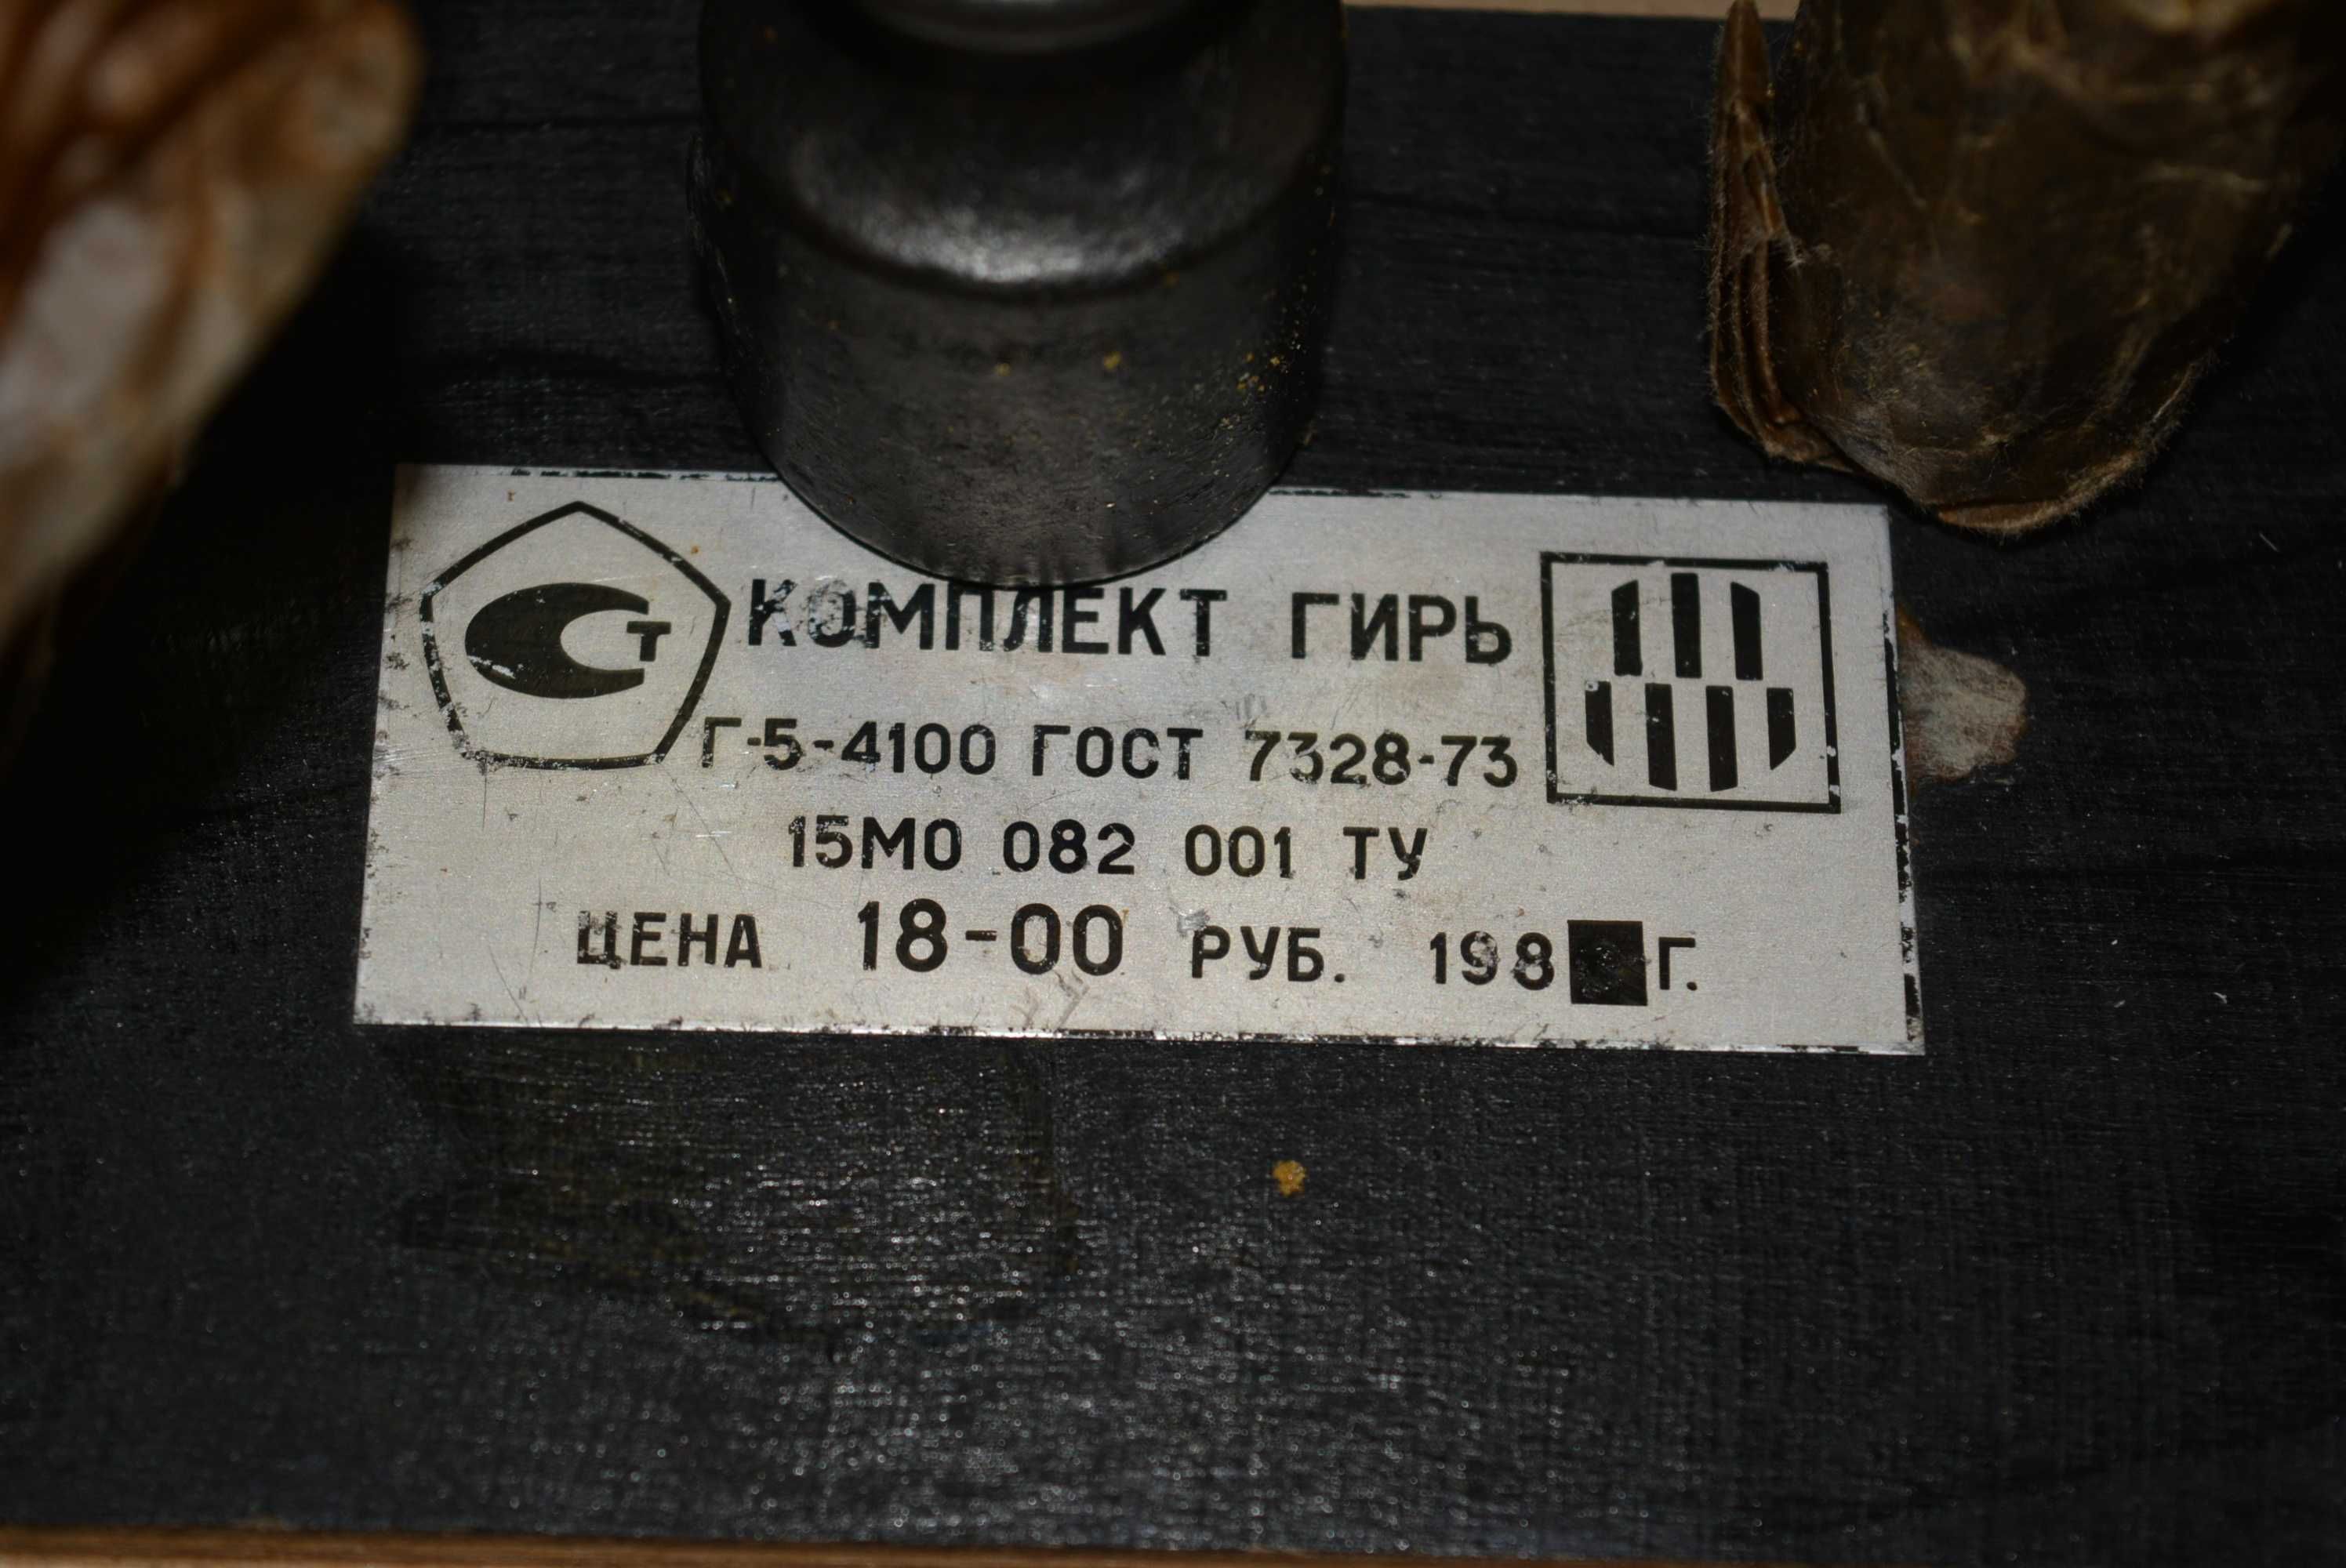 Новый комплект гирь для механических весов в деревянном футляре Г-5-41